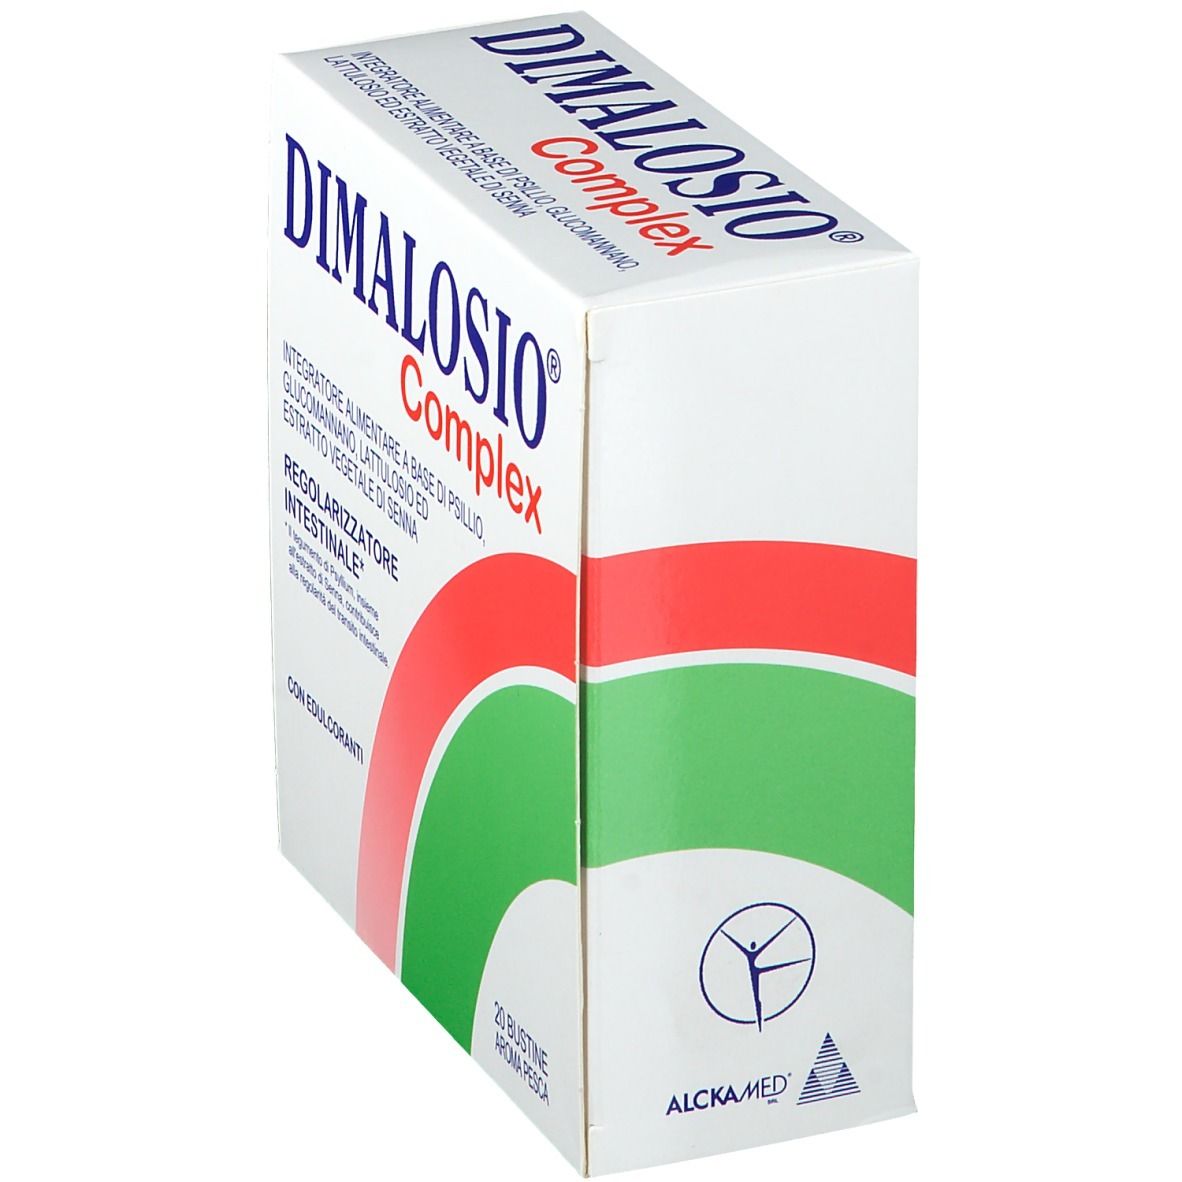 Dimalosio® Complex